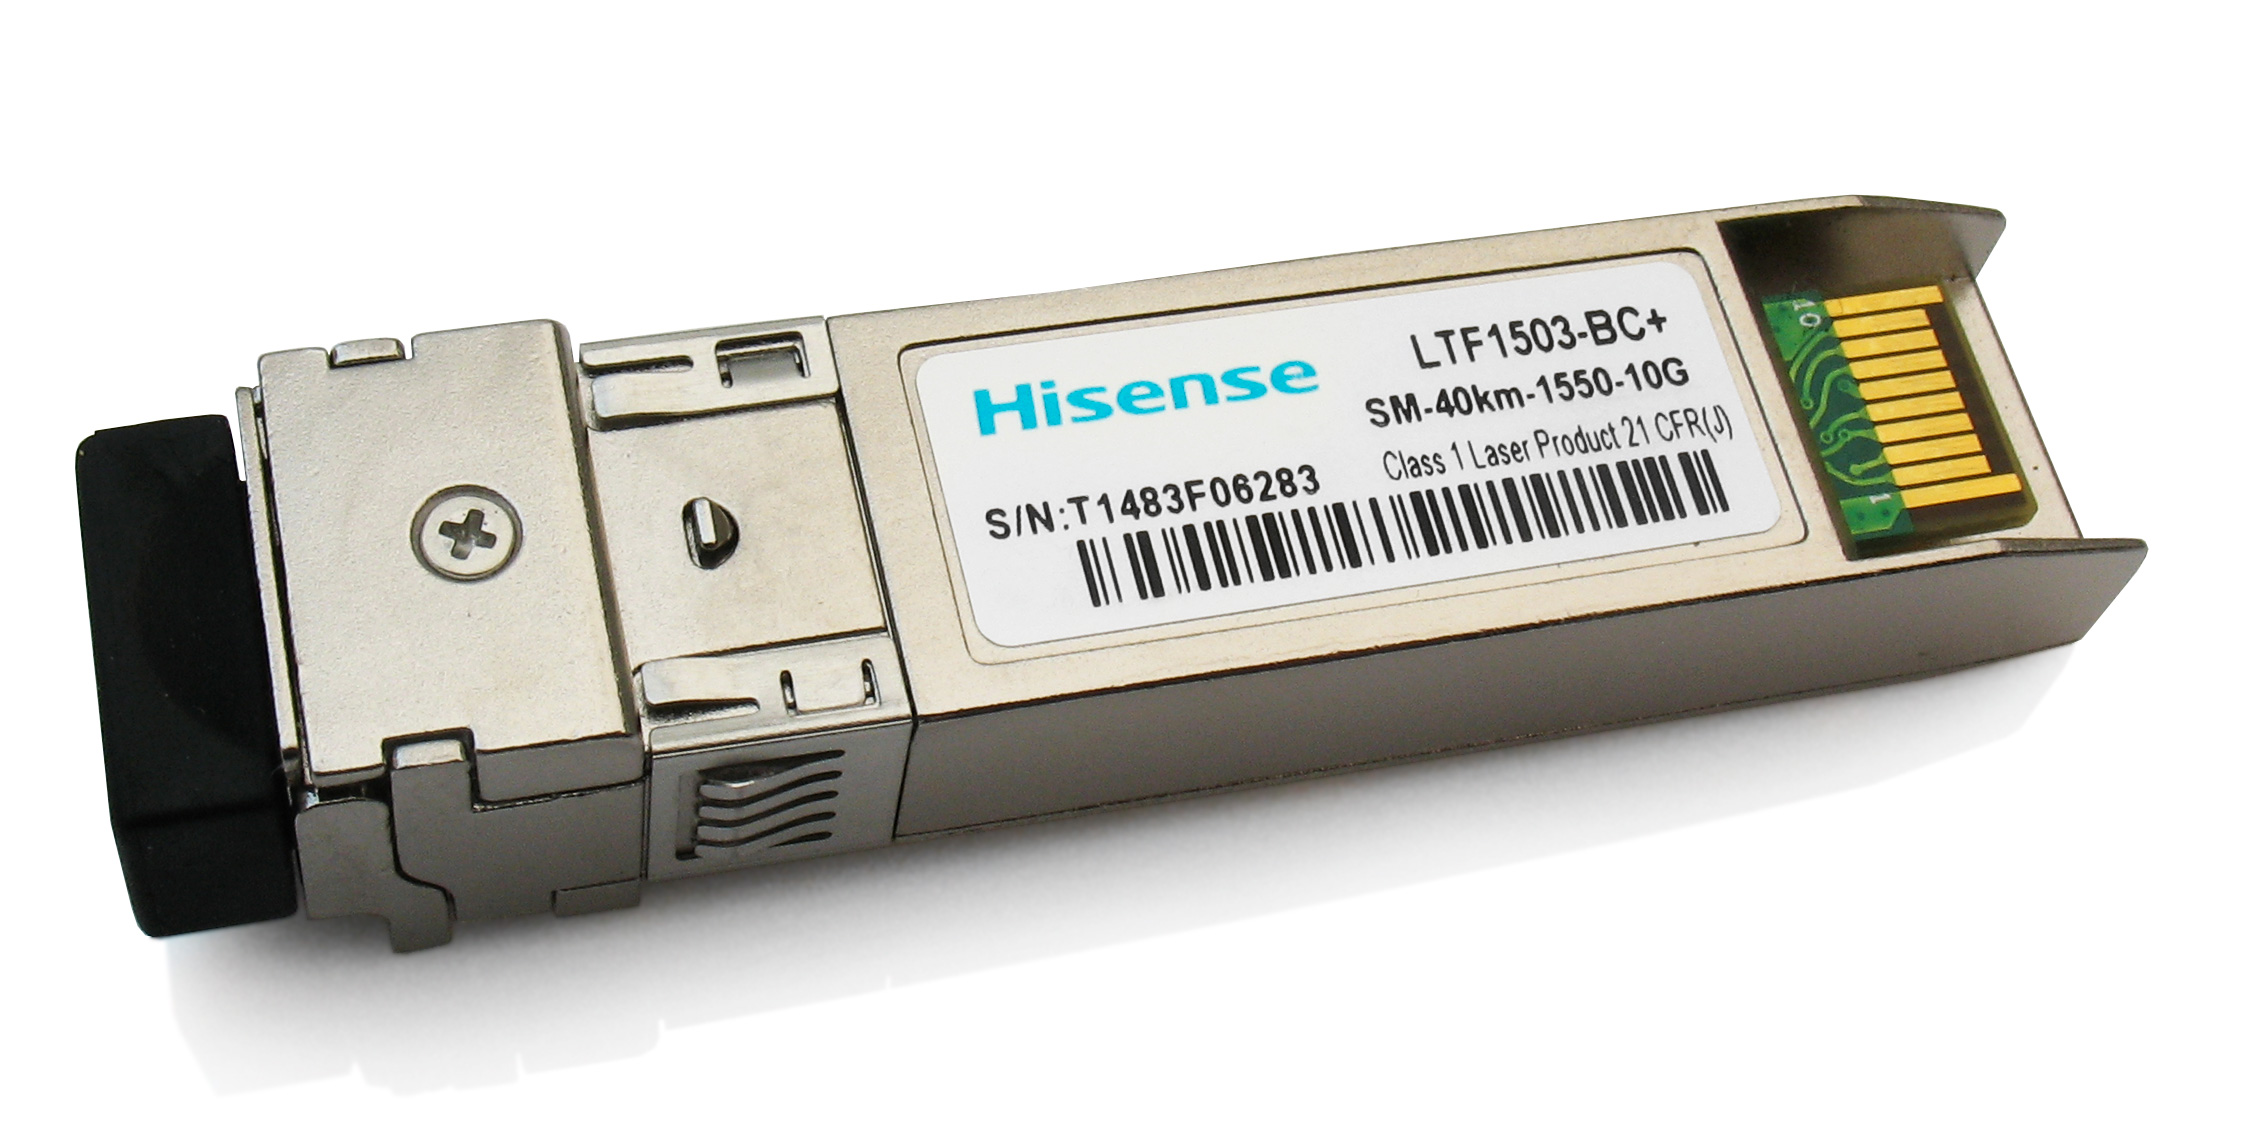 Hisense LTF1503-BC+